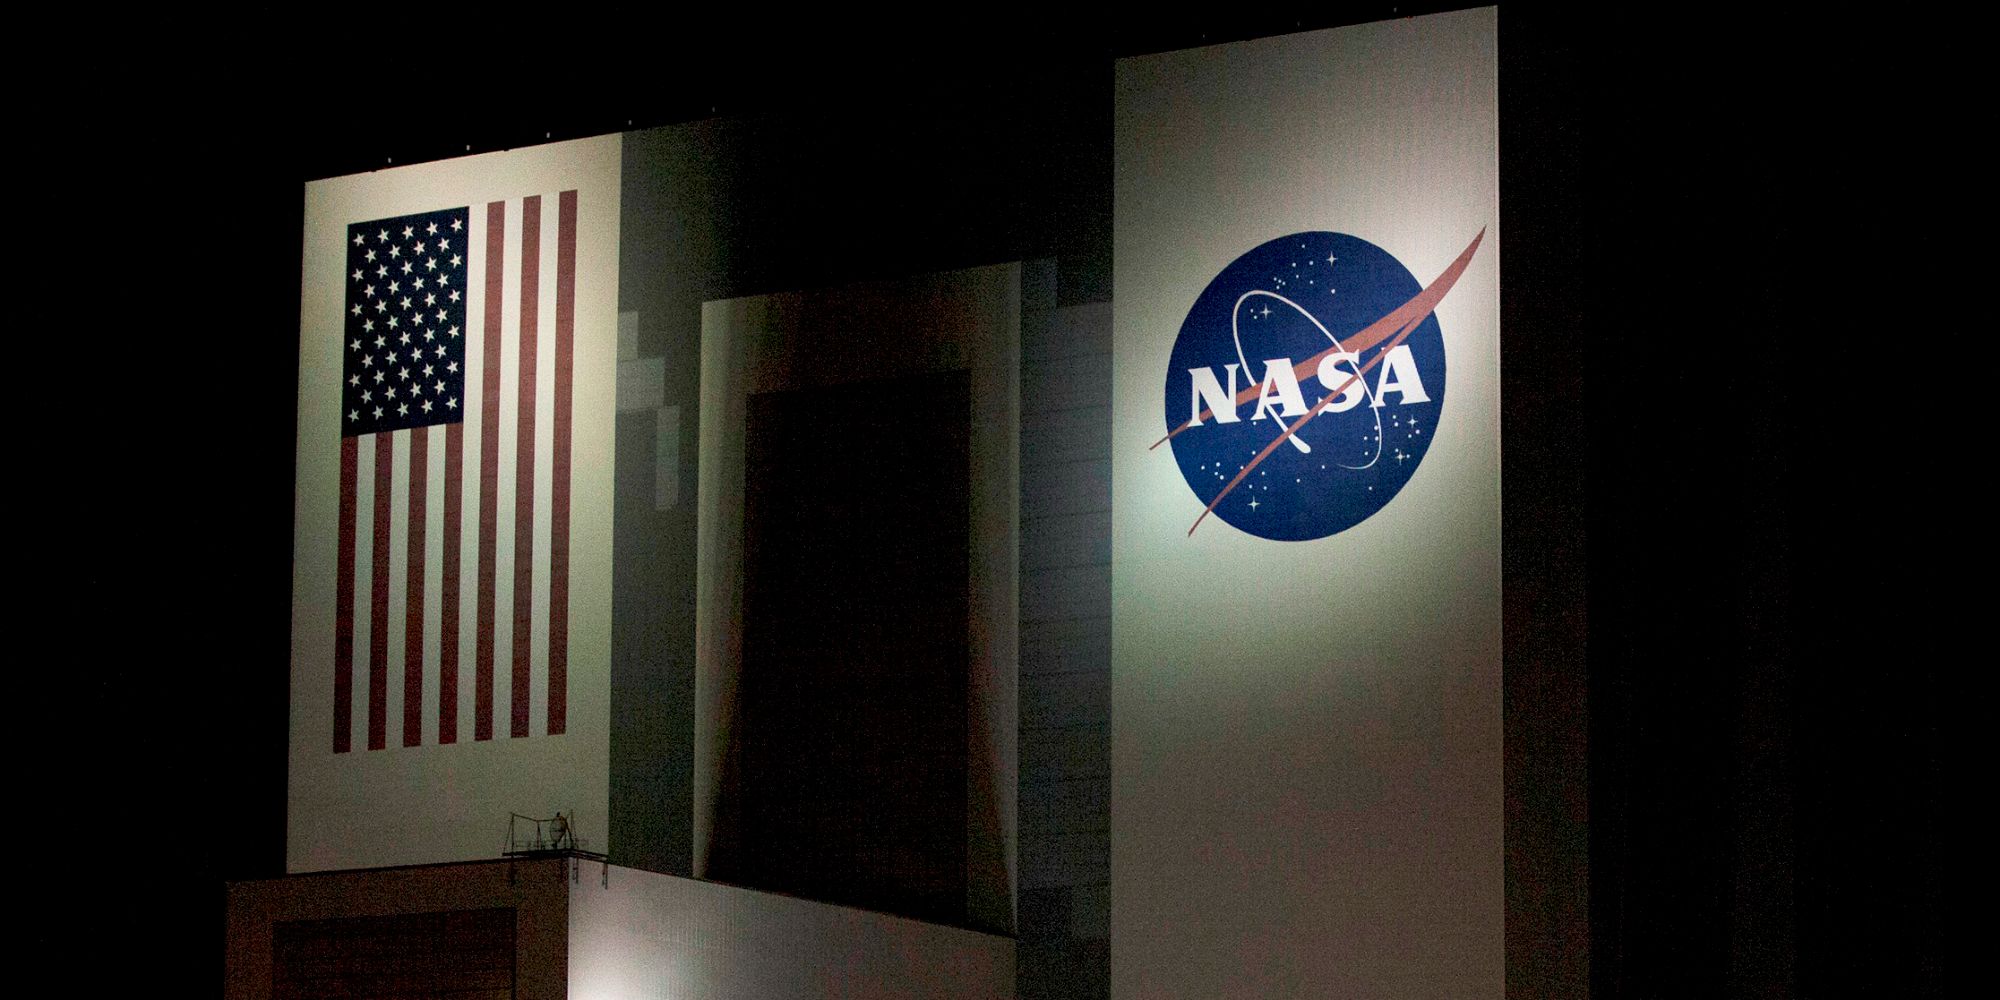 NASA building next to the U.S. flag